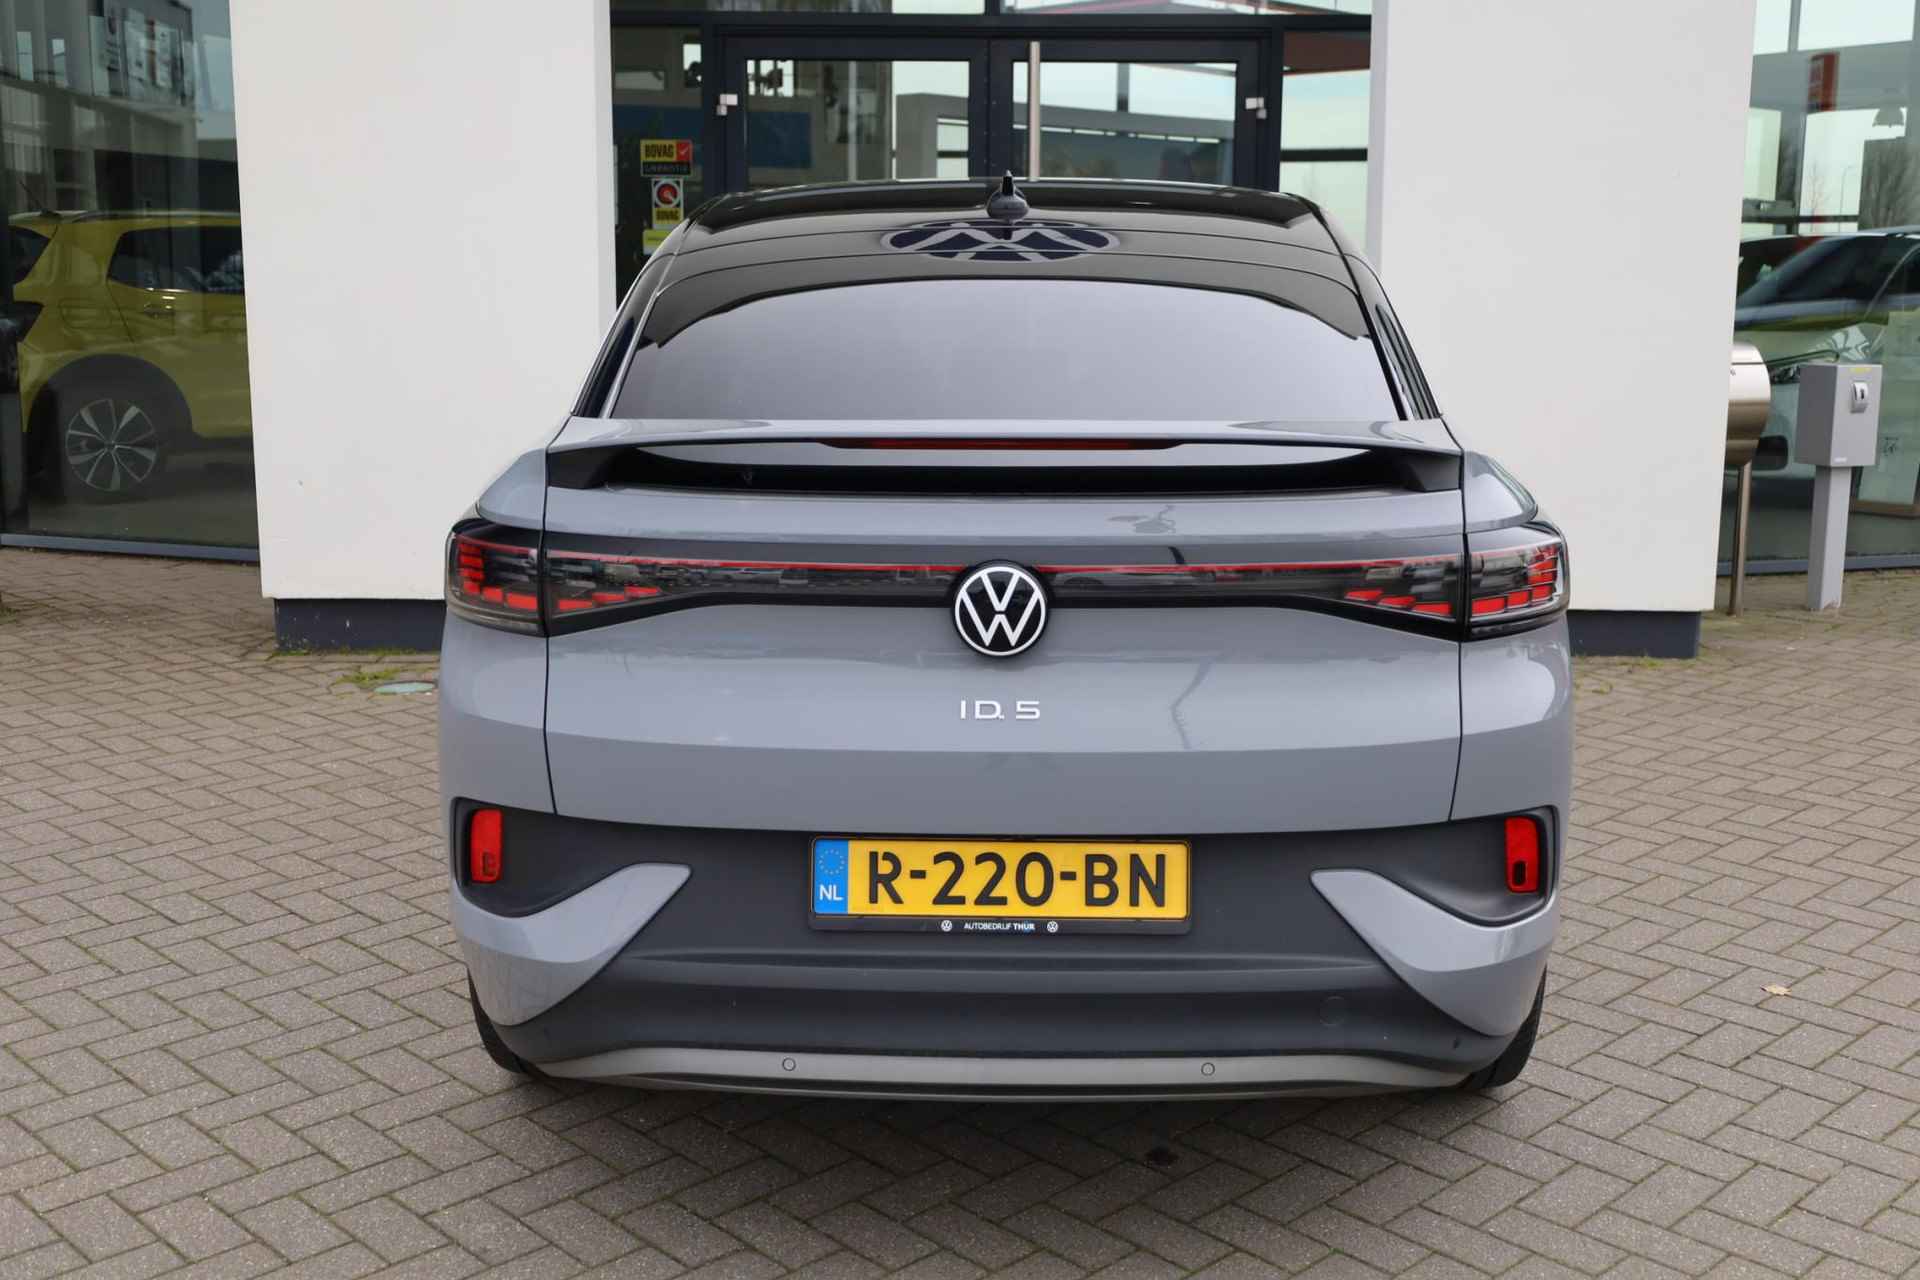 Volkswagen ID.5 Pro 77 kWh NL auto, nieuw door ons verkocht en geleverd, designpakket (led matrix privacy glas led strip tussen koplampen), comfort pakket (stoel en stuurwiel en voorruit verwarming), navigatie pakket, 20" drammen lmv, assitance pakket, keyless entry, achteruitrijcamera - 7/40